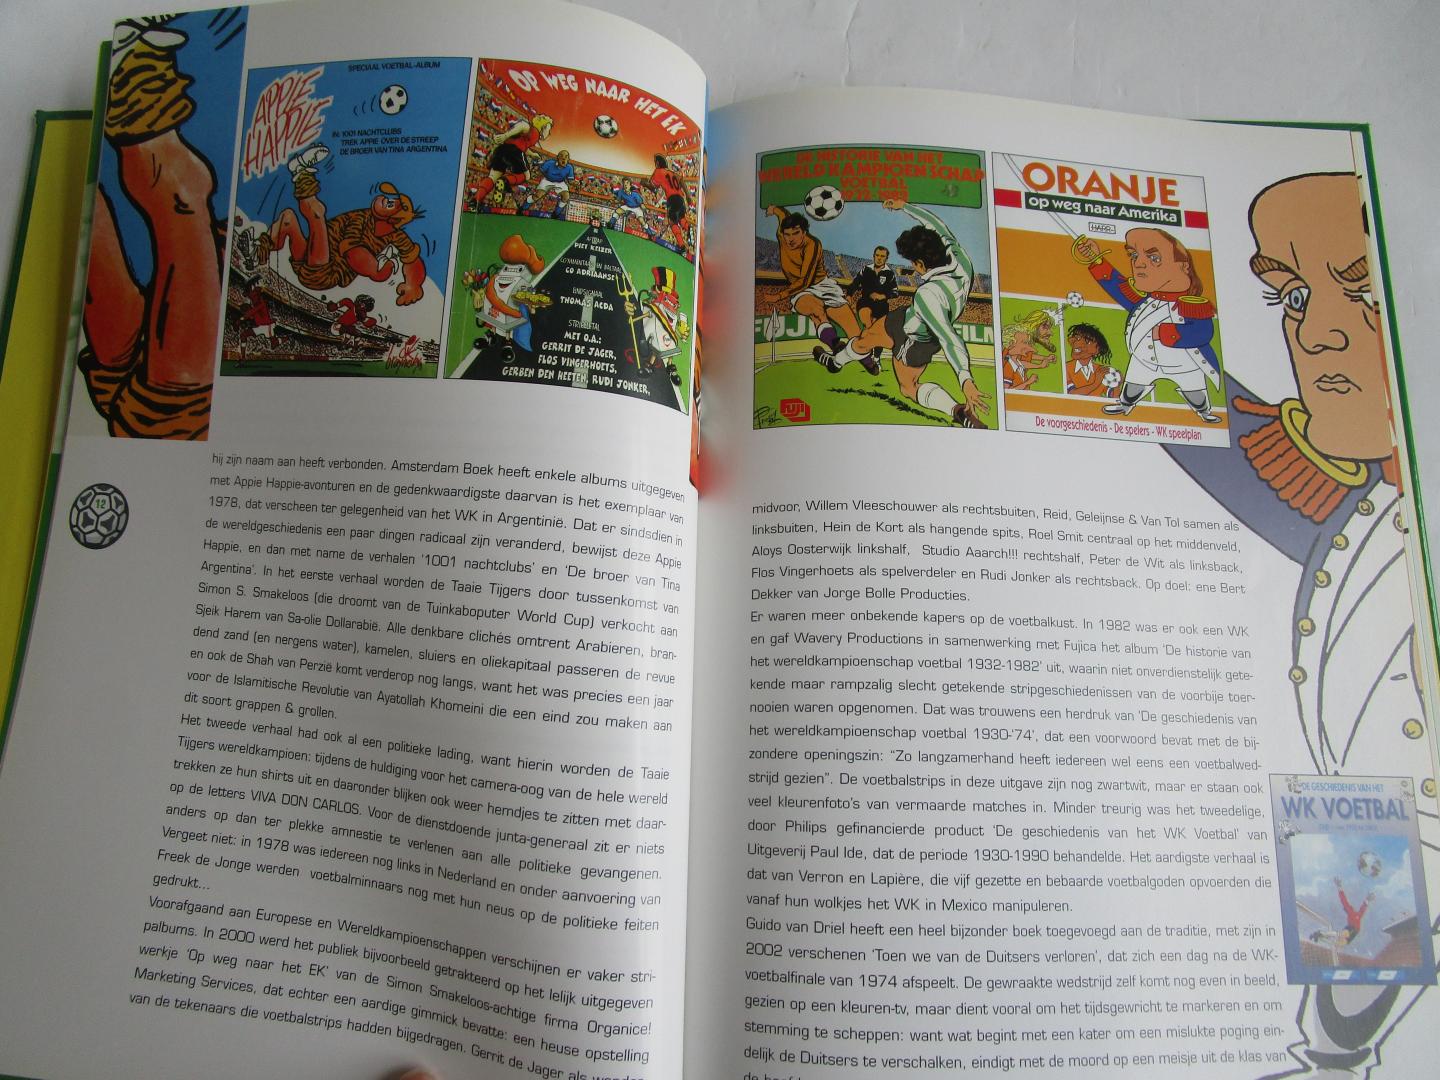 Gemeente Haarlem (uitgave van) - klonen van Kick Wilstra, De  - Een boek over strips, voetbal en HFC Haarlem -